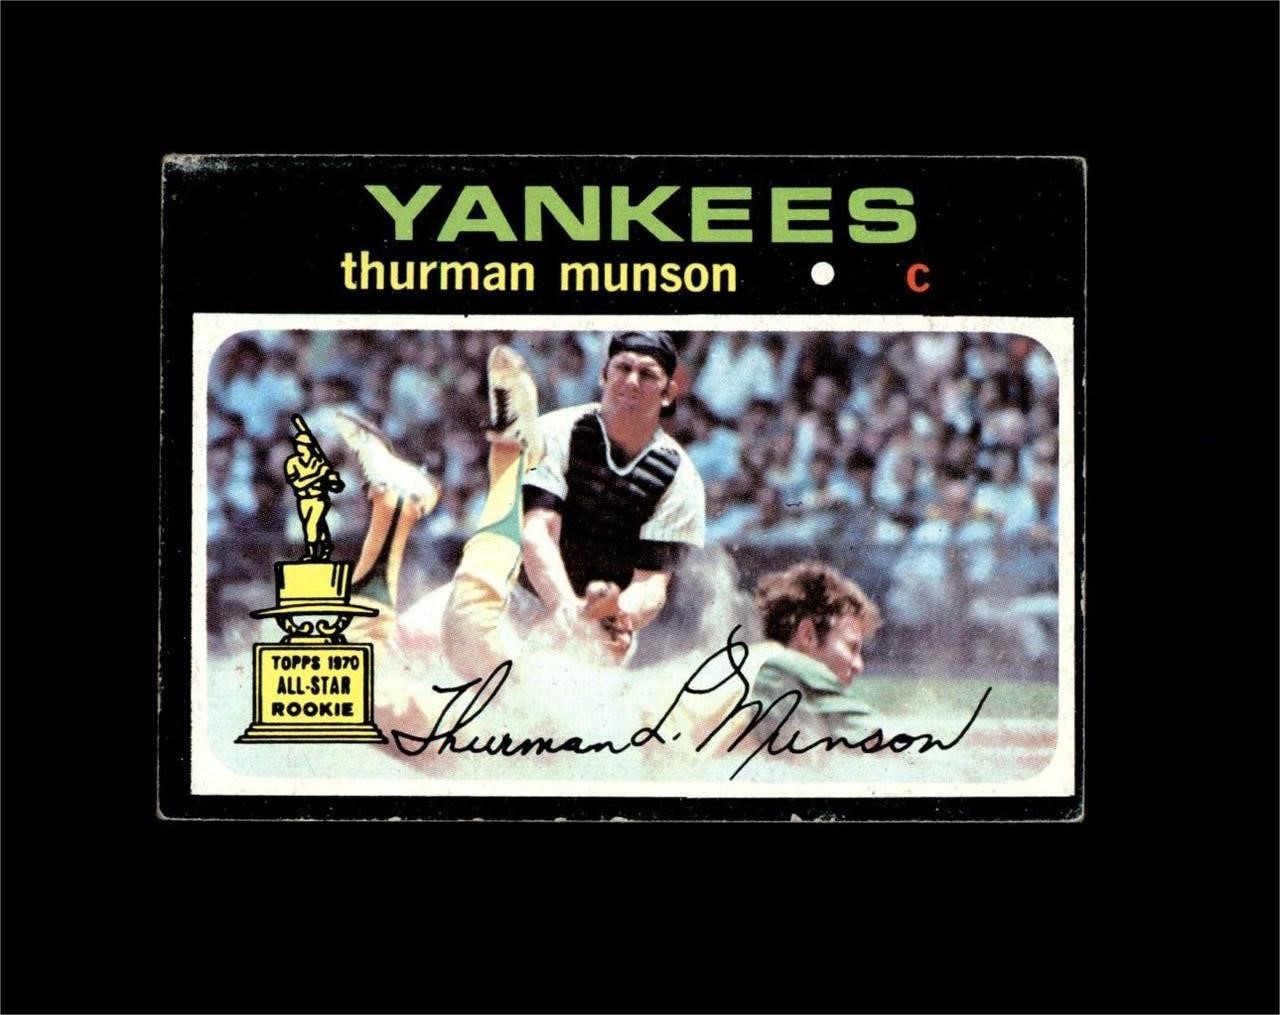 Vintage Sports Card Auction - Ends SUN 5/5 9PM CST